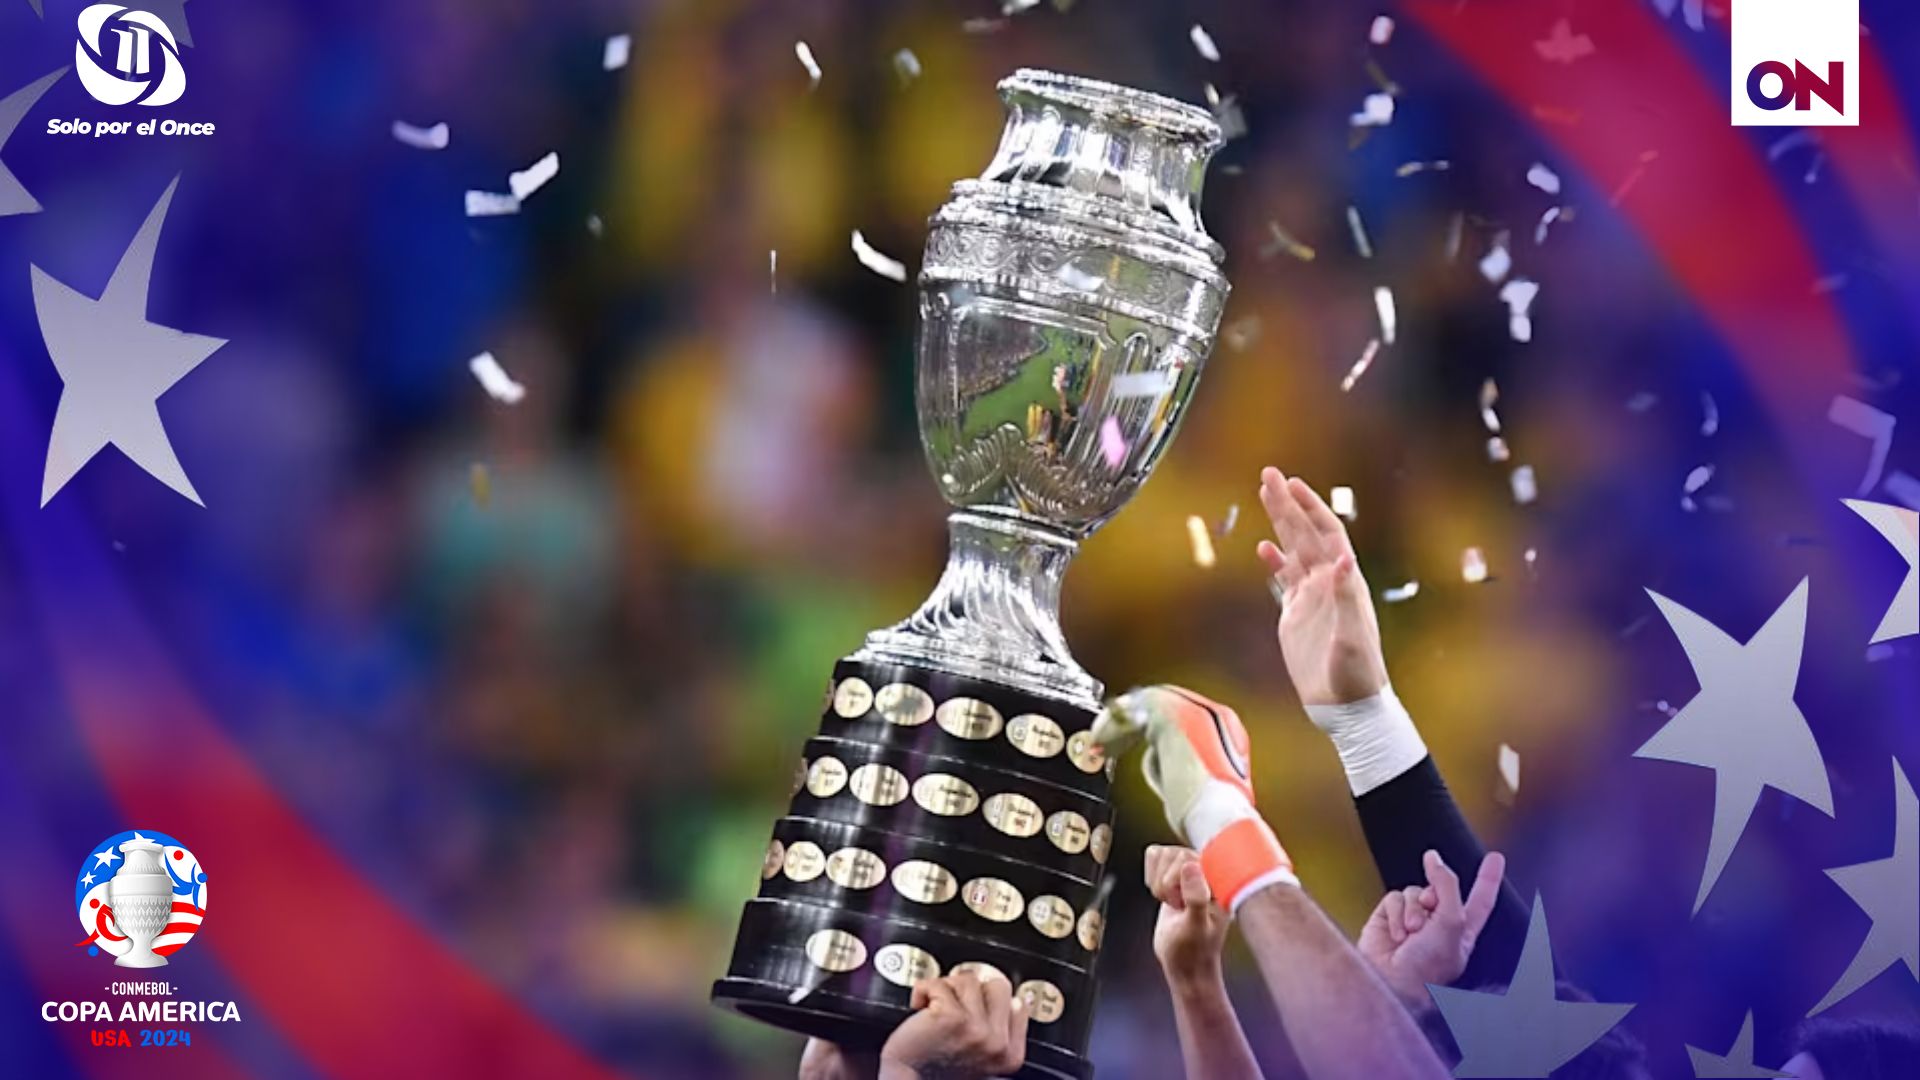 La Copa América, se trata un evento importante y en esta ocasión se estará desarrollando en Estados Unidos, anteriormente se informaba que su anfitrión sería Ecuador, pero descartó por completo.